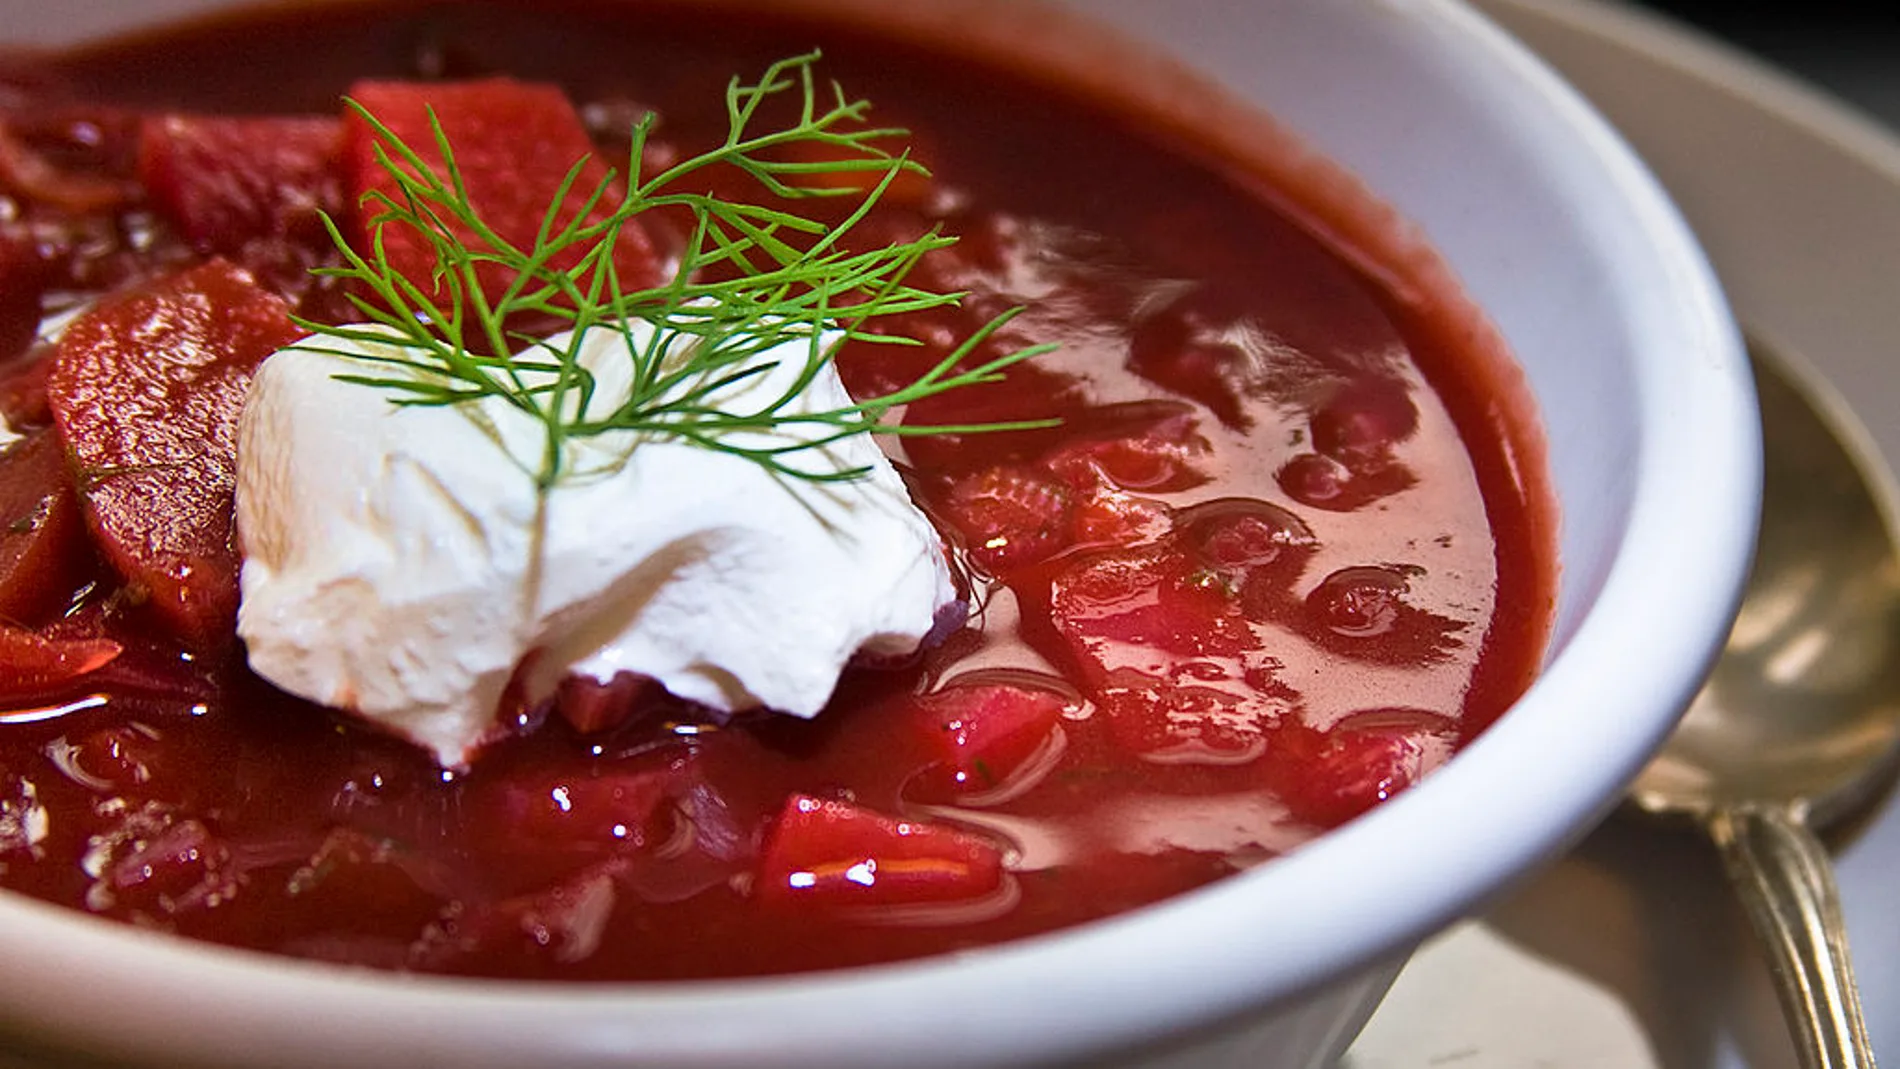 El "borsch tiene una base de caldo de carne, remolacha y repollo, y a menudo va acompañada de nata o crema de yogur. Es muy popular en Europa central y oriental